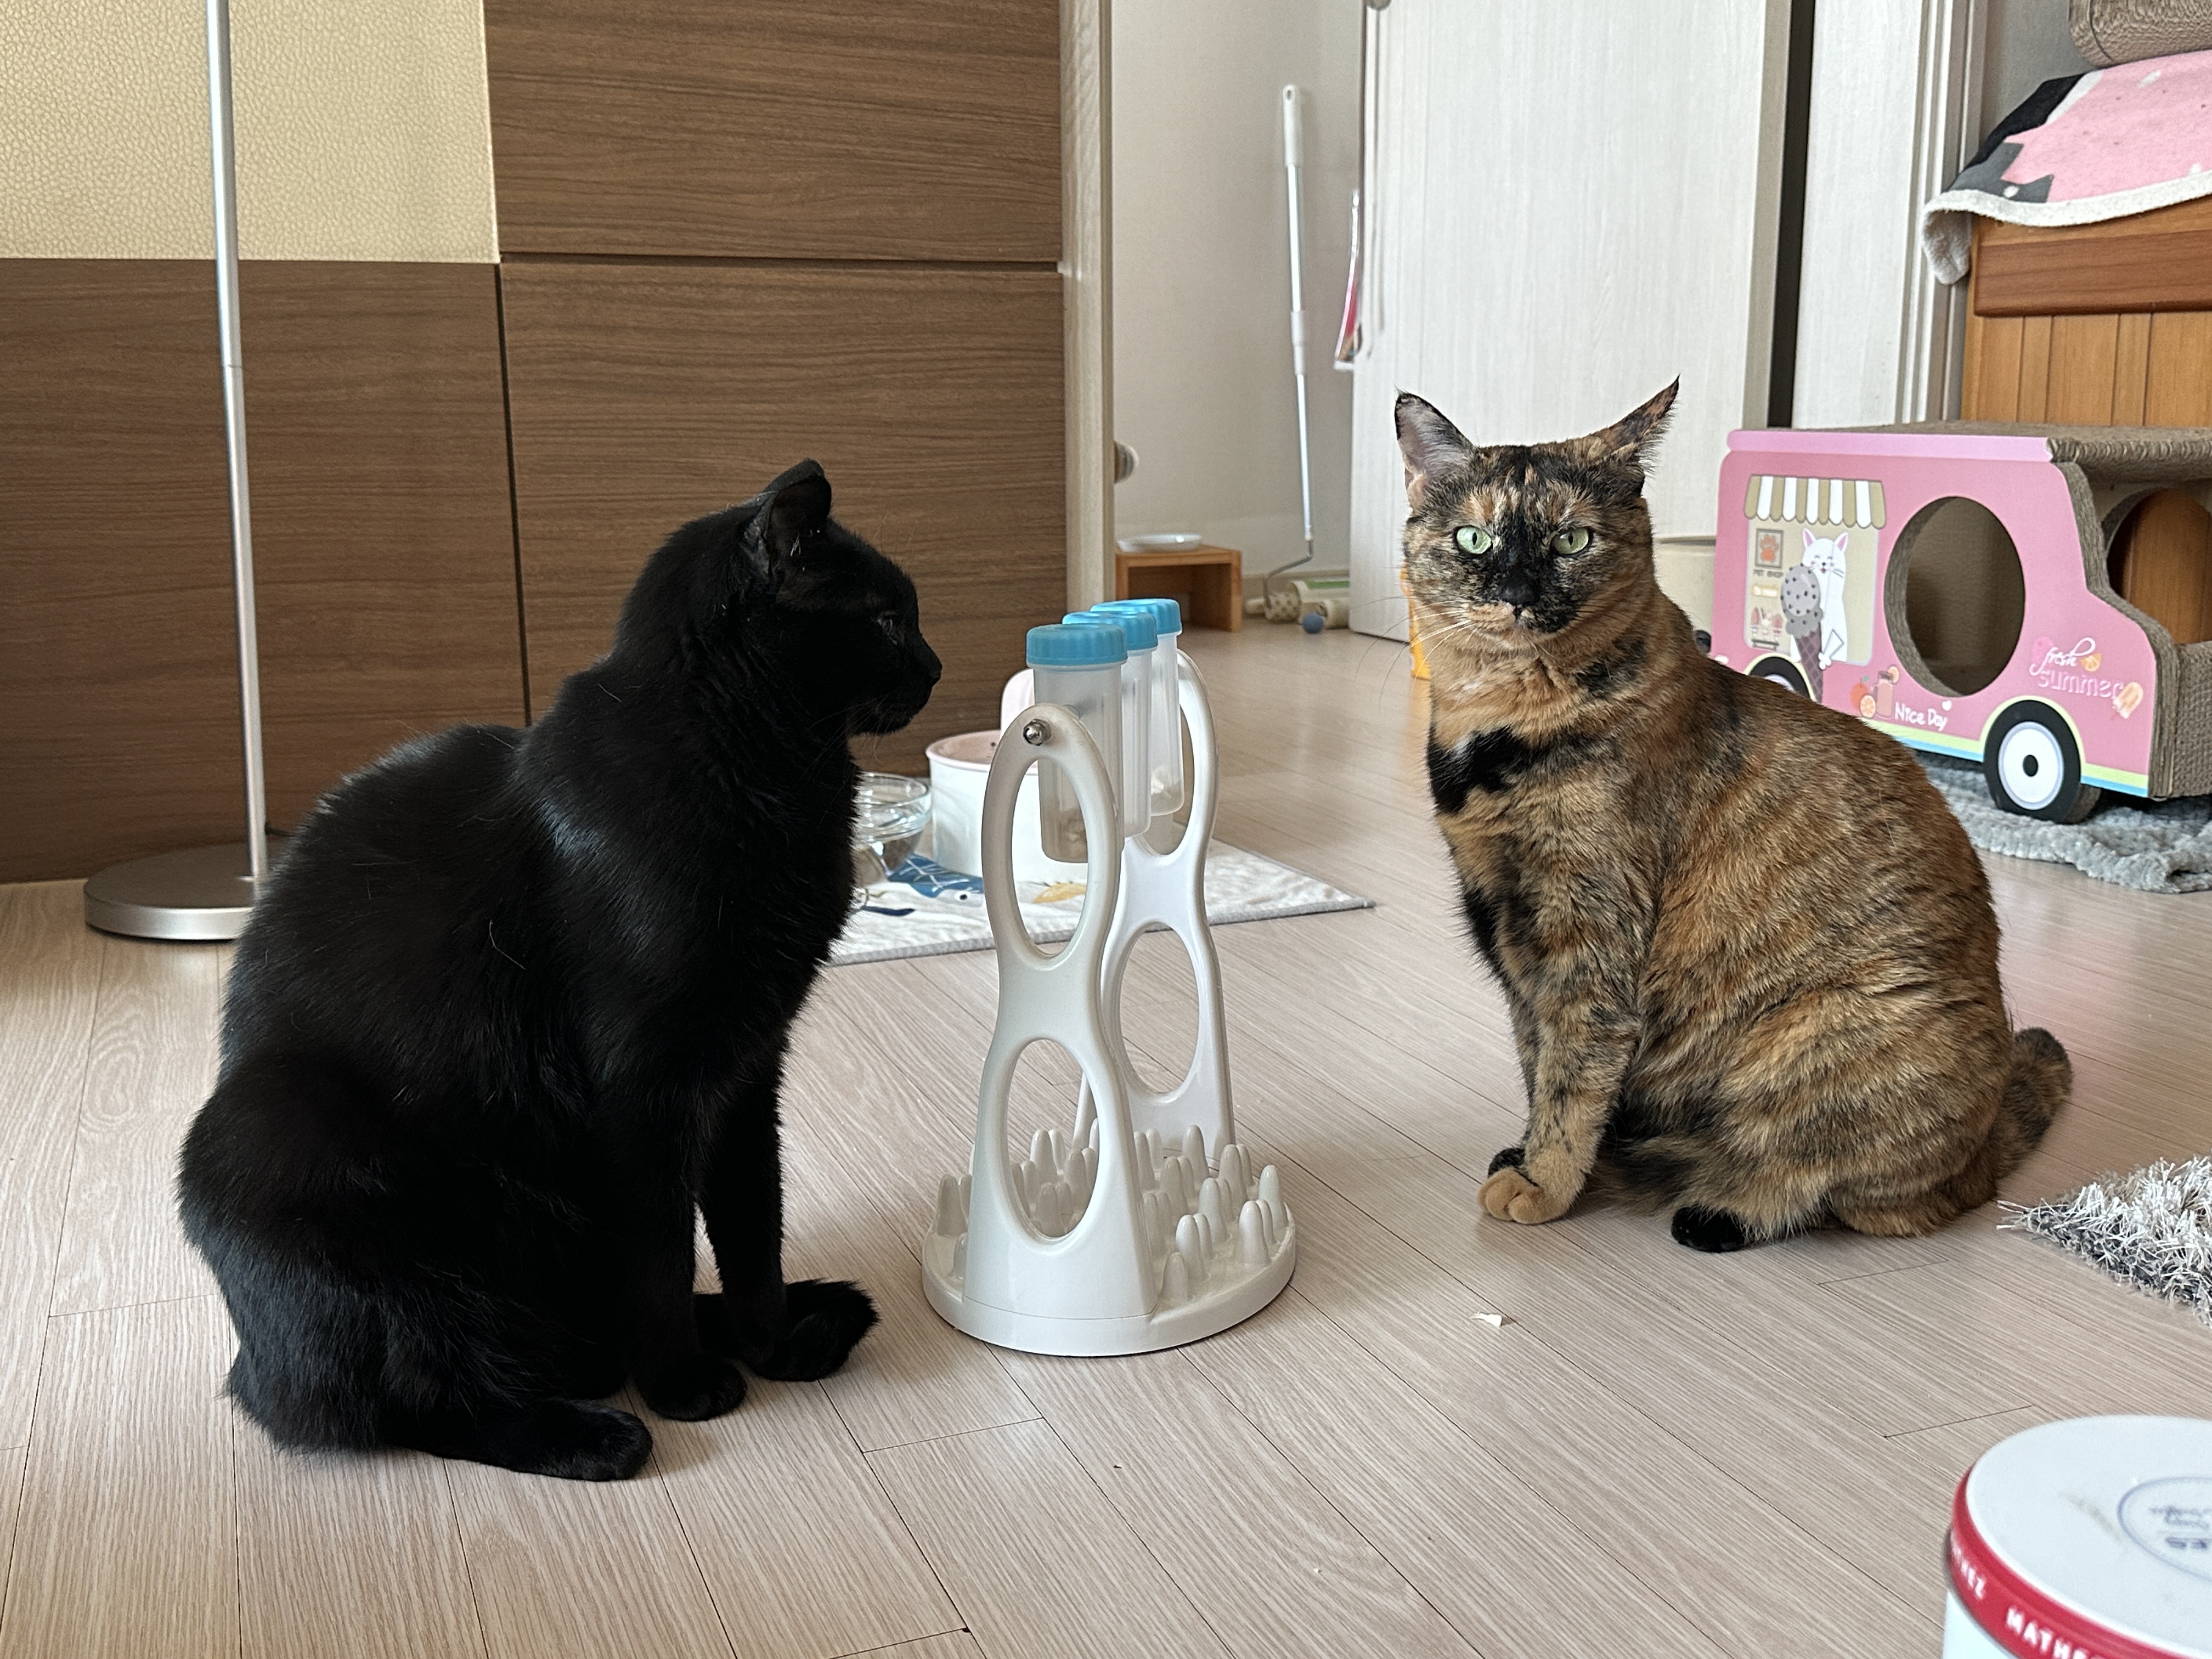 우리집 똑똑한 고양이 건이와 먹보 사랑이 (feat. 똑똑한 고양이를 둔 다묘집사의 고민)